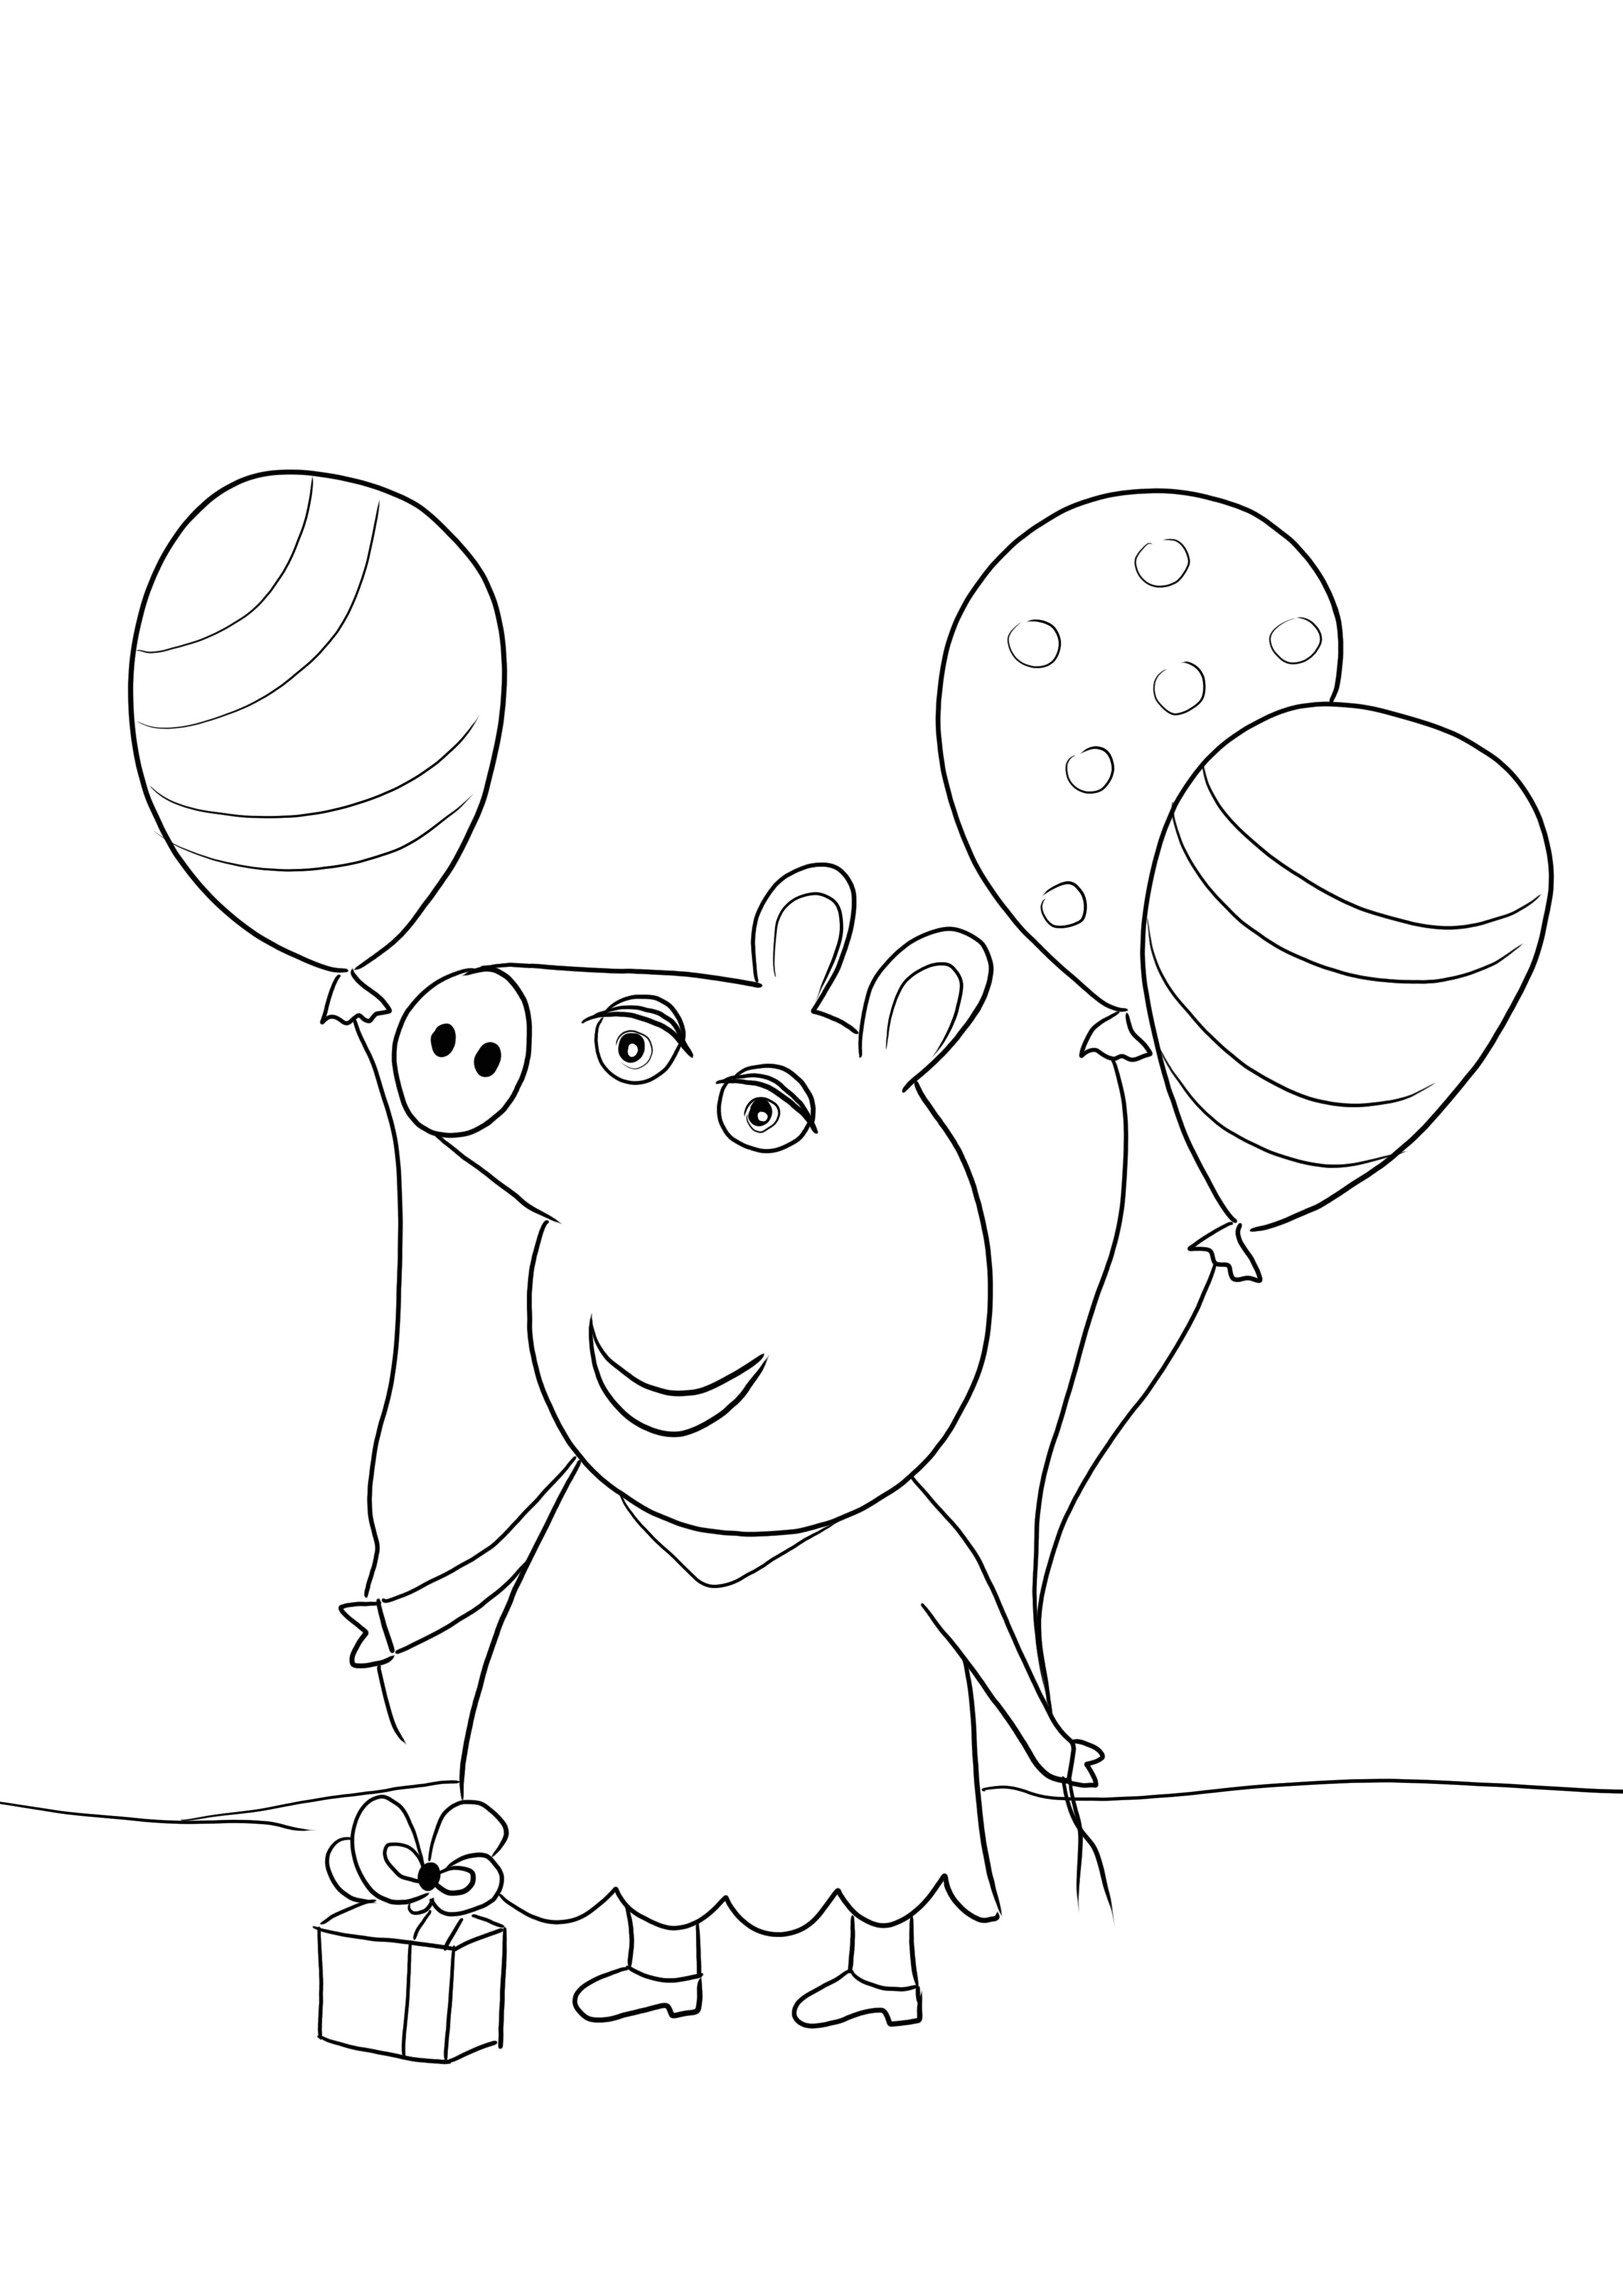 Peppa Pig with Balloons menossa syntymäpäiväjuhliin tulostamaan ja värittämään ilmaiseksi